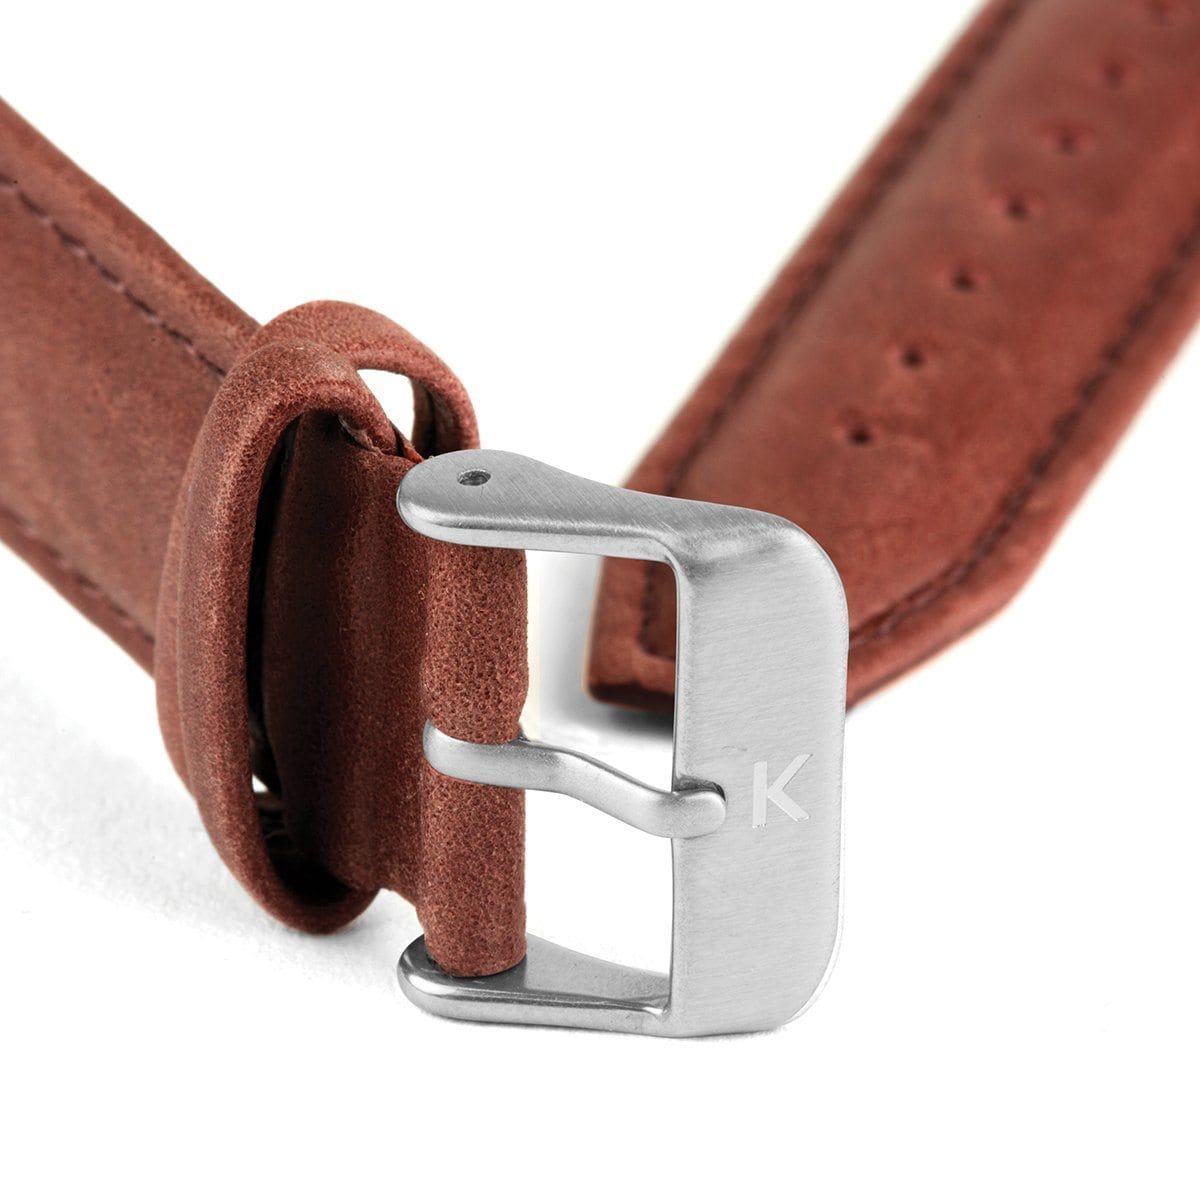 Maroon Stitched Leather Watch Strap - 20mm Width Watch Strap - Kartel Scotland